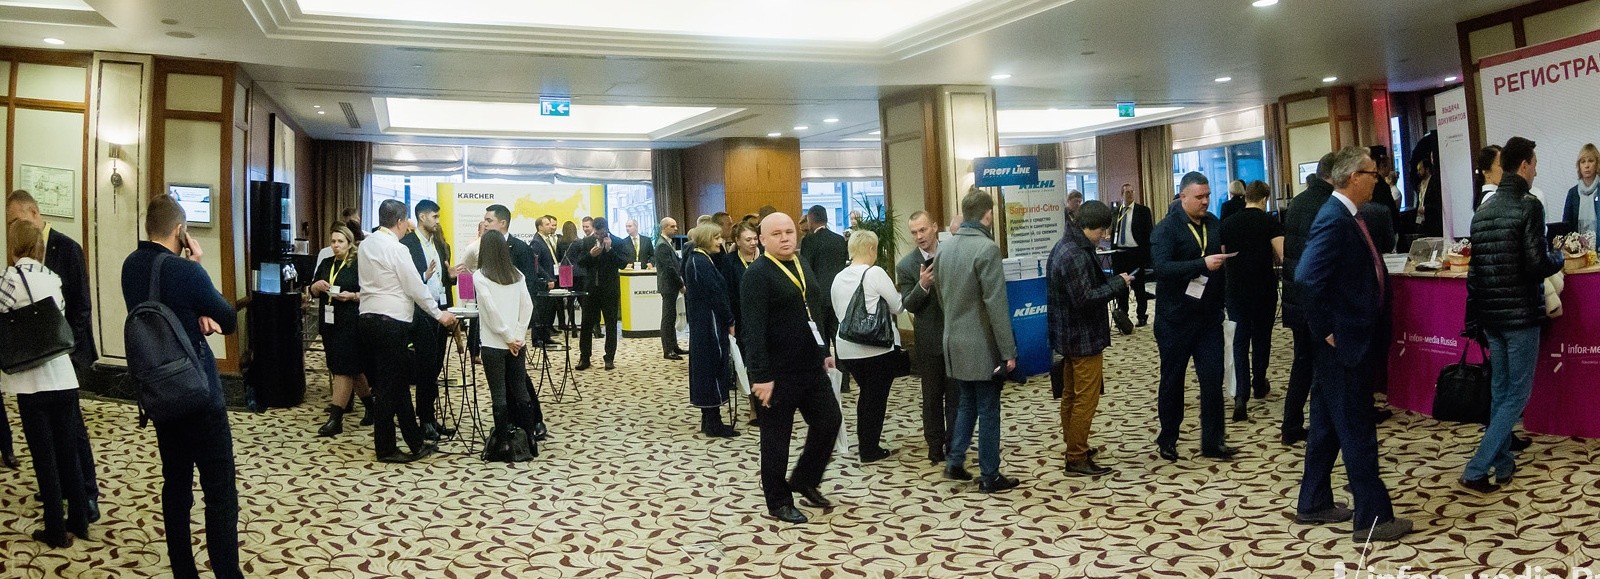 IV Всероссийская конференция «Российский рынок клининга 2019»